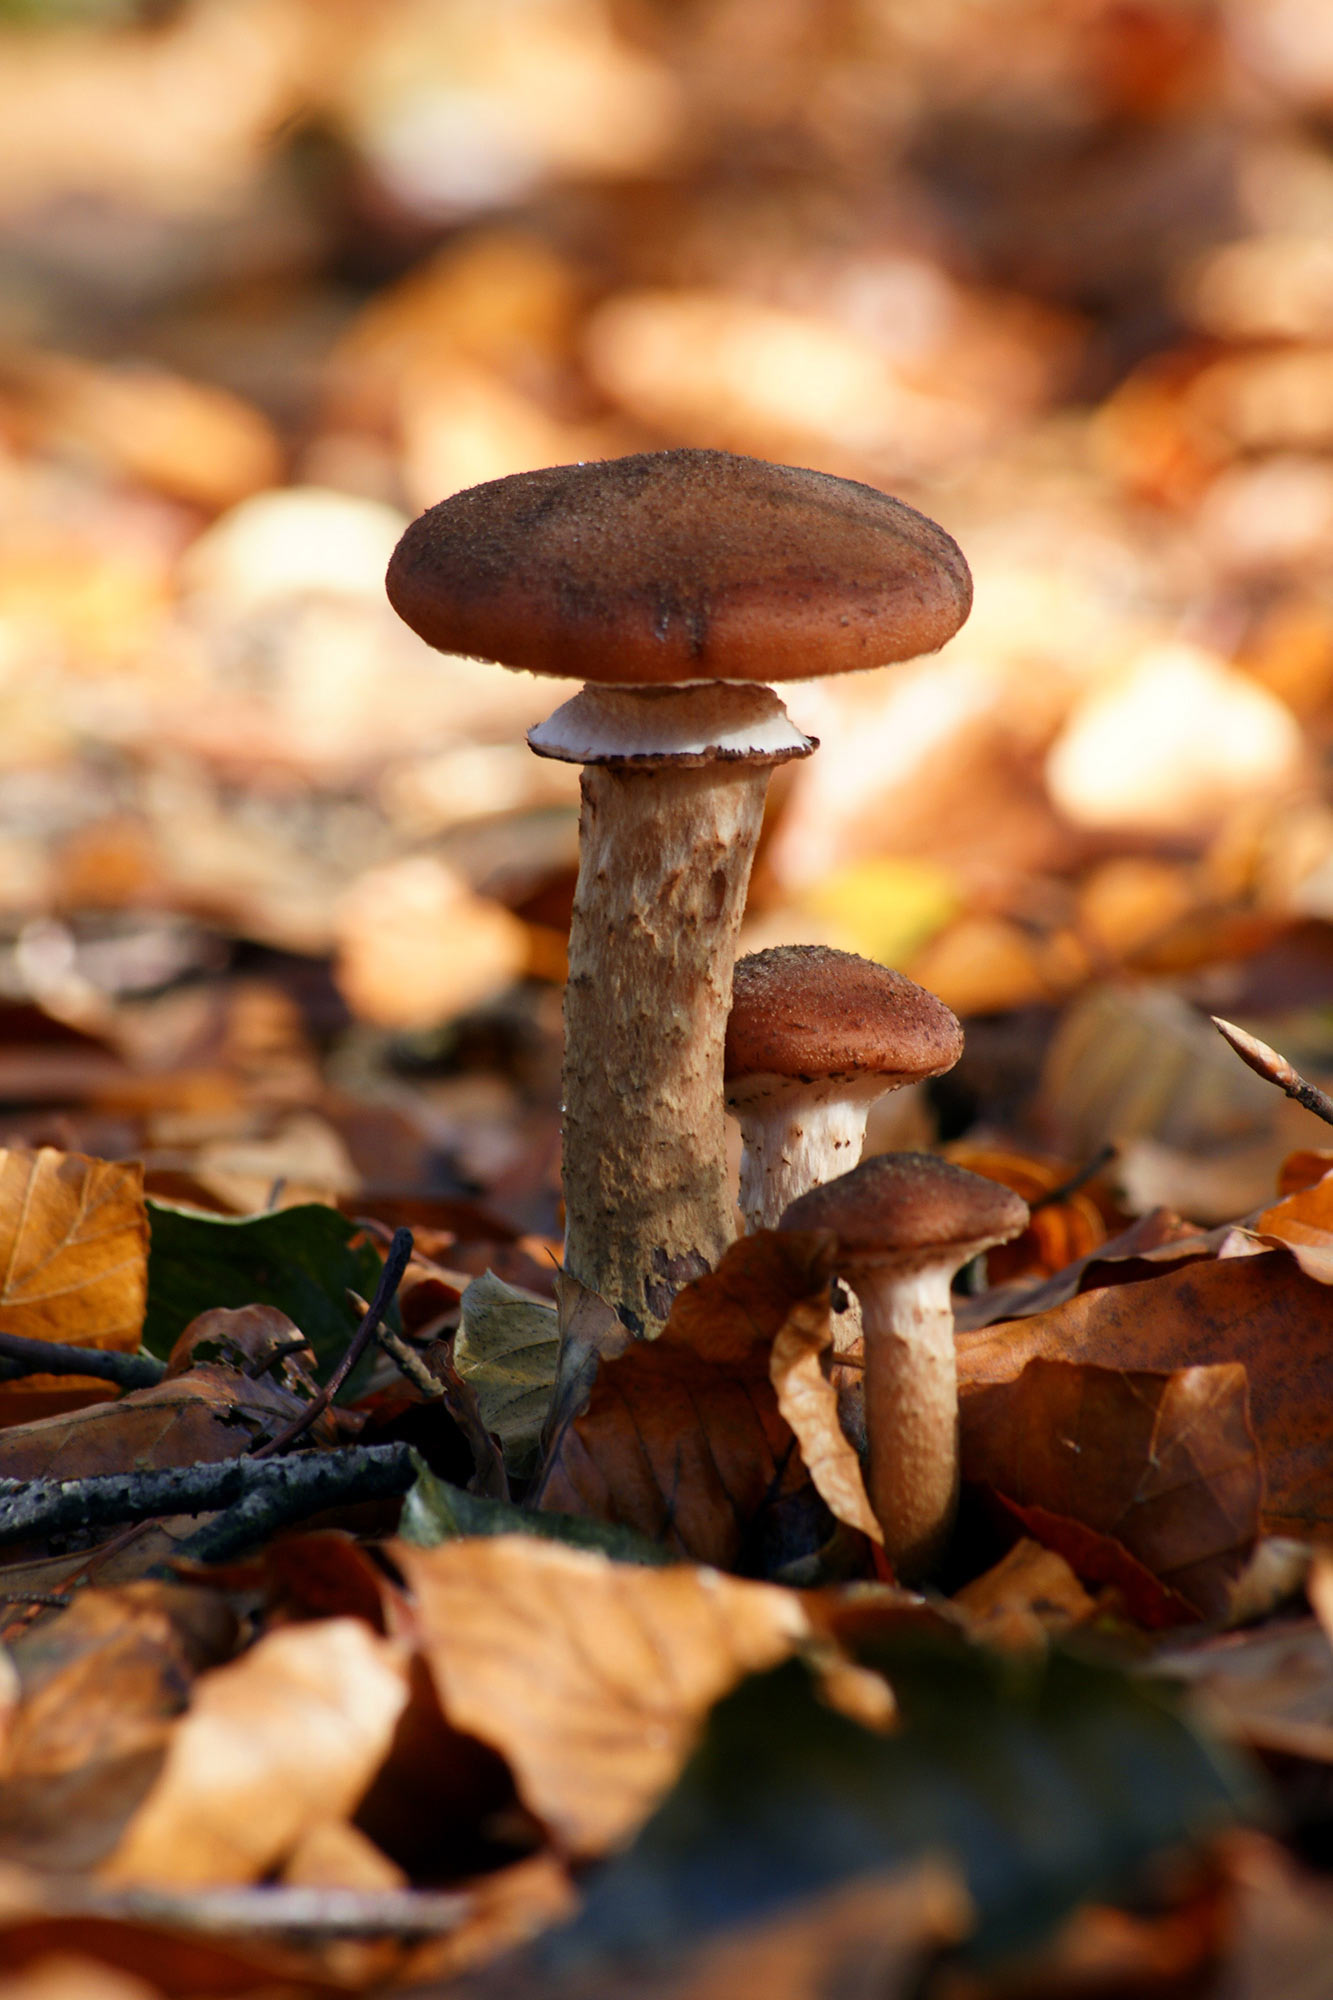 Triplet mushroom